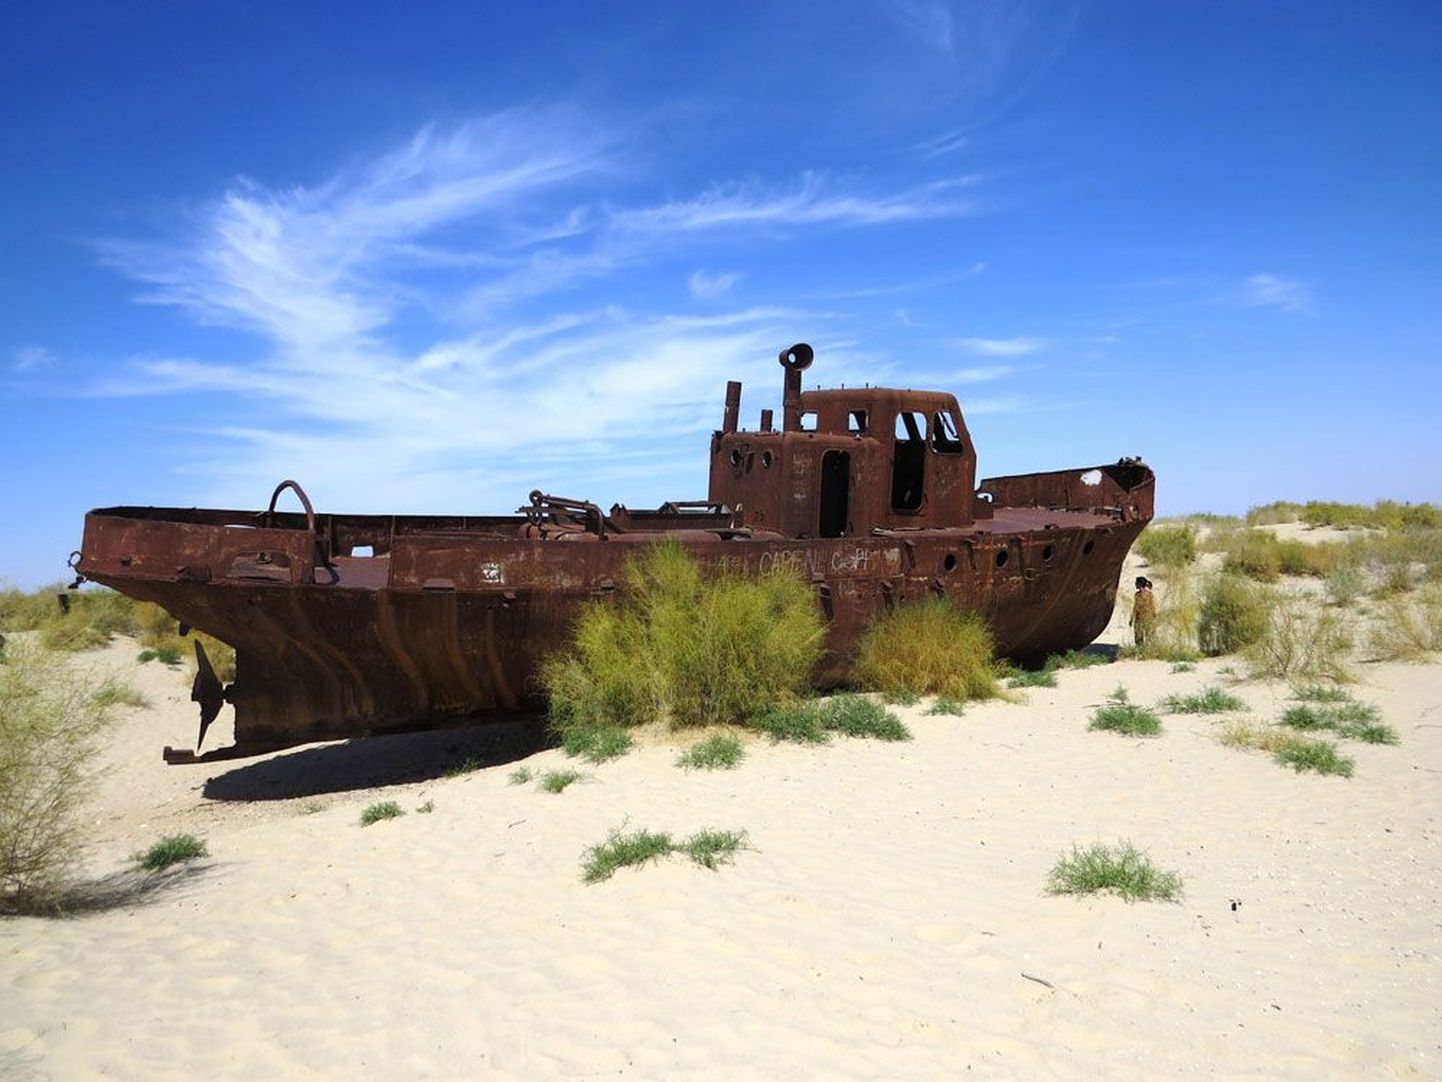 Roostetav laev tuletab möödujatele meelde inimlikku rumalust, mis sai Araali merele saatuslikuks.